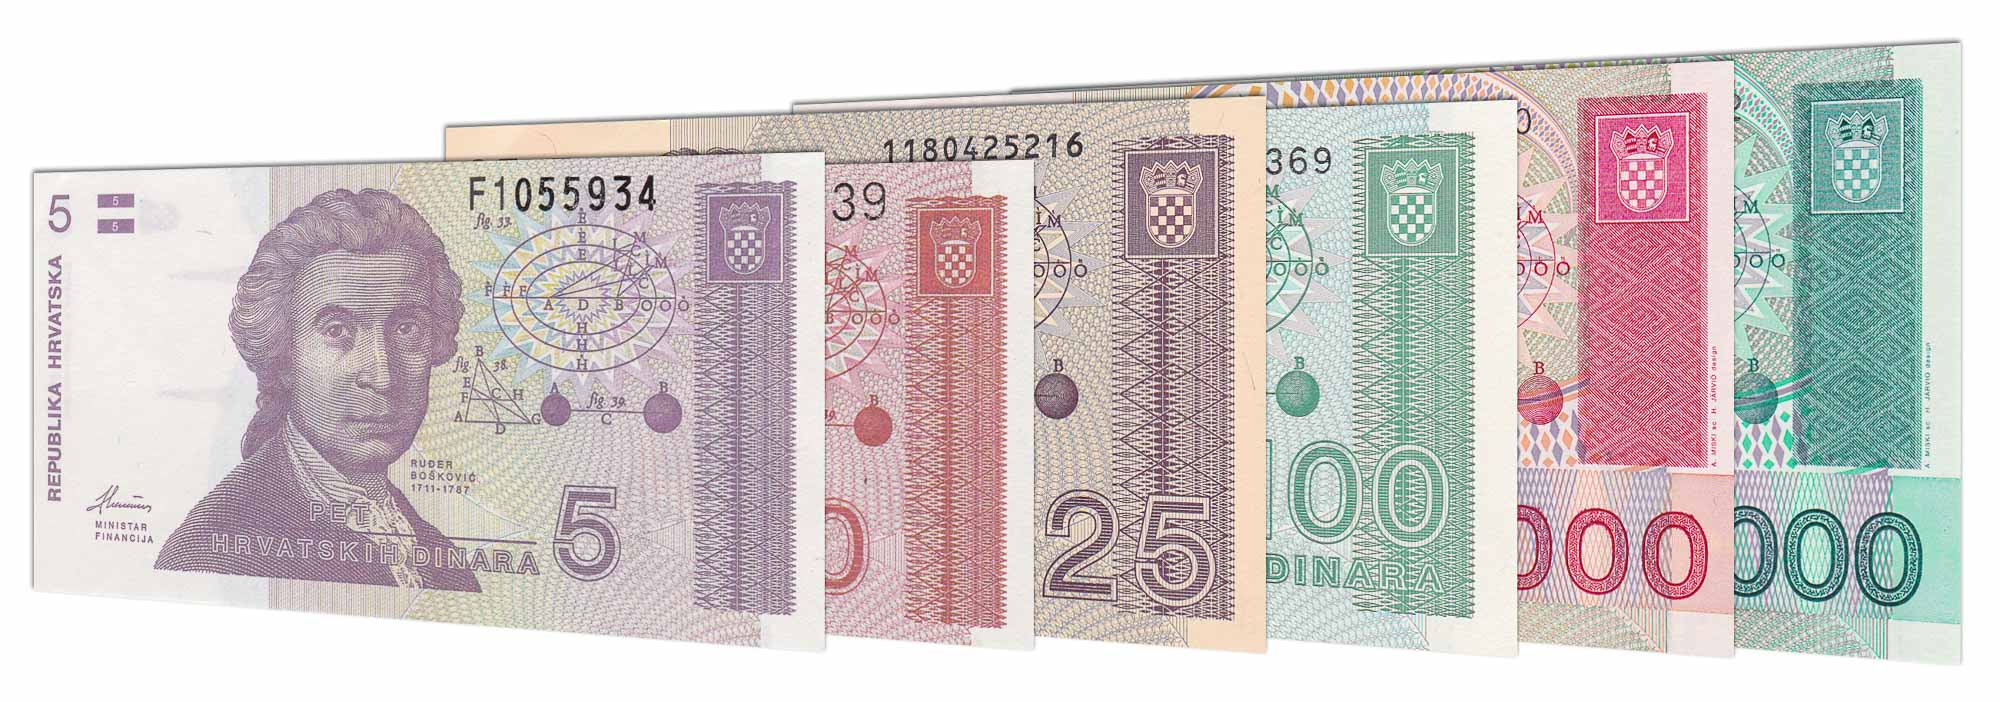 Rupiah berapa dinara hrvatska republika 50000 50,000 Dinara